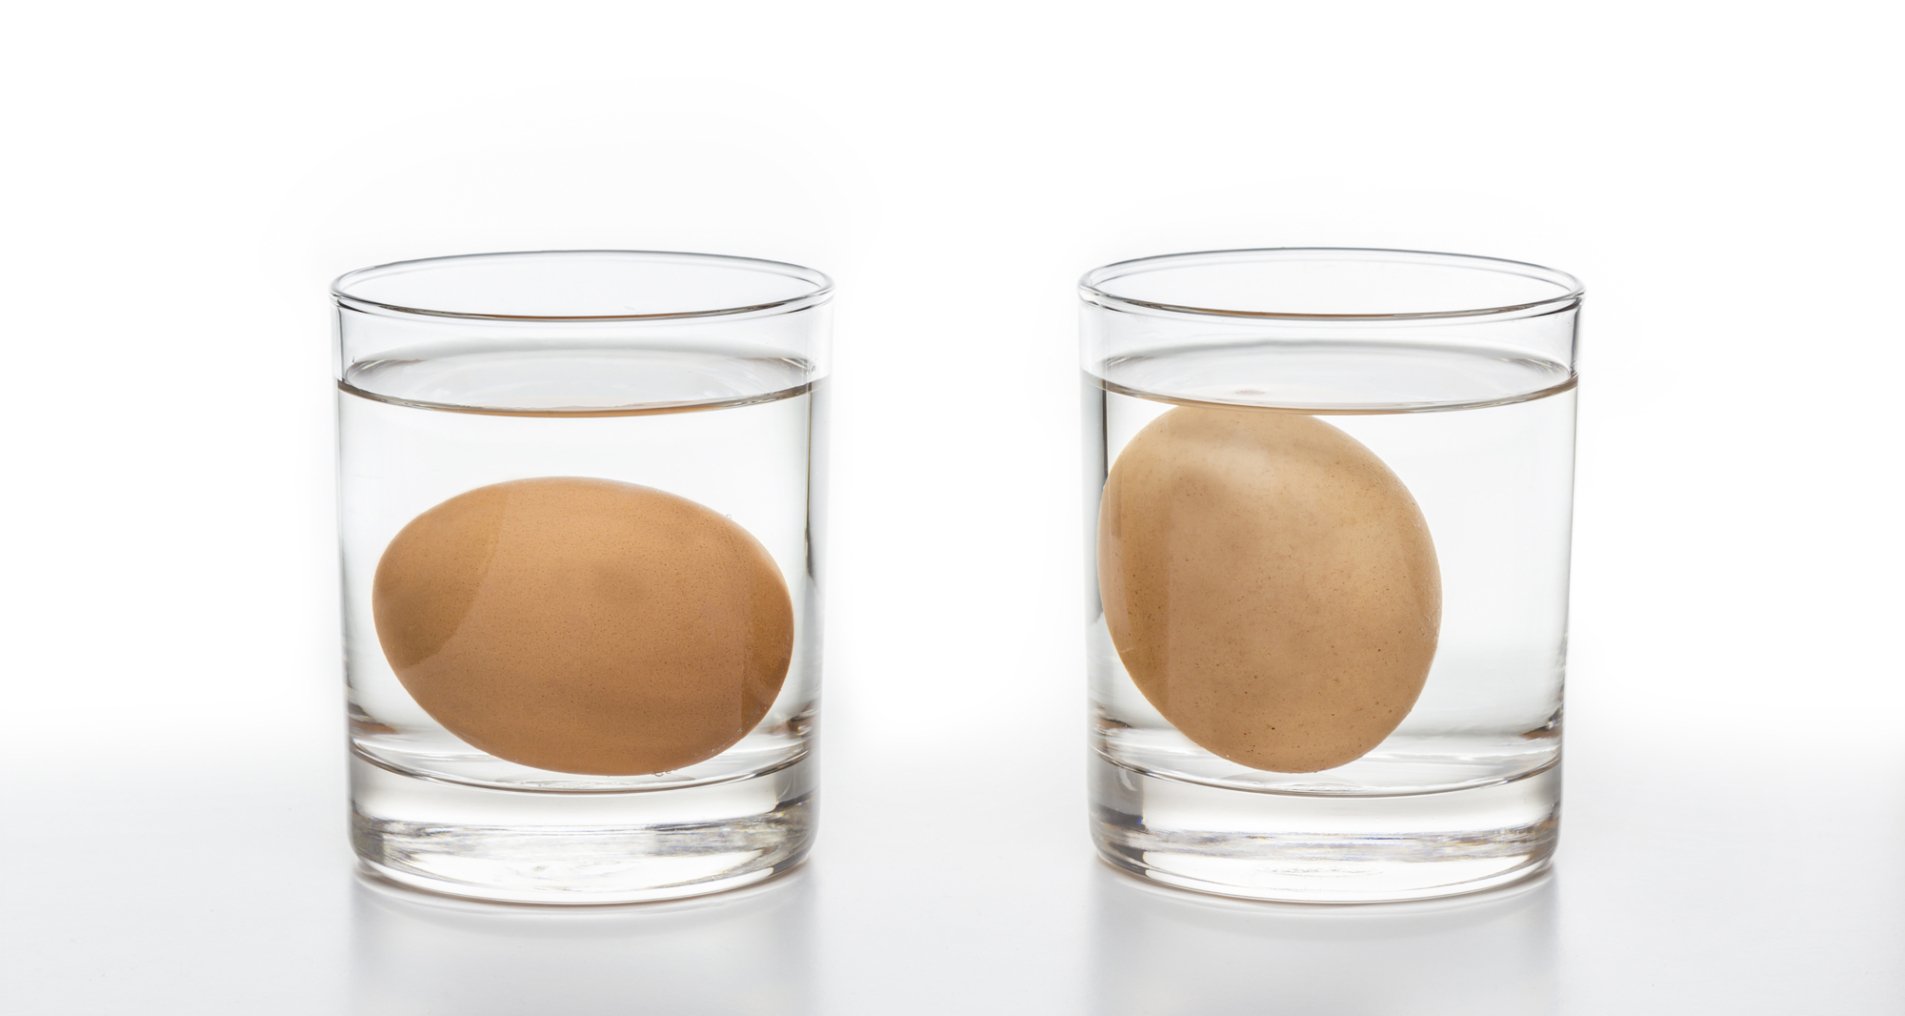 Яйцо поместить в воду. Яйцо в стакане с водой. Свежее яйцо в соленой воде. Яйцо в стакане с водой свежесть. Яйца в стакане на белом фоне.